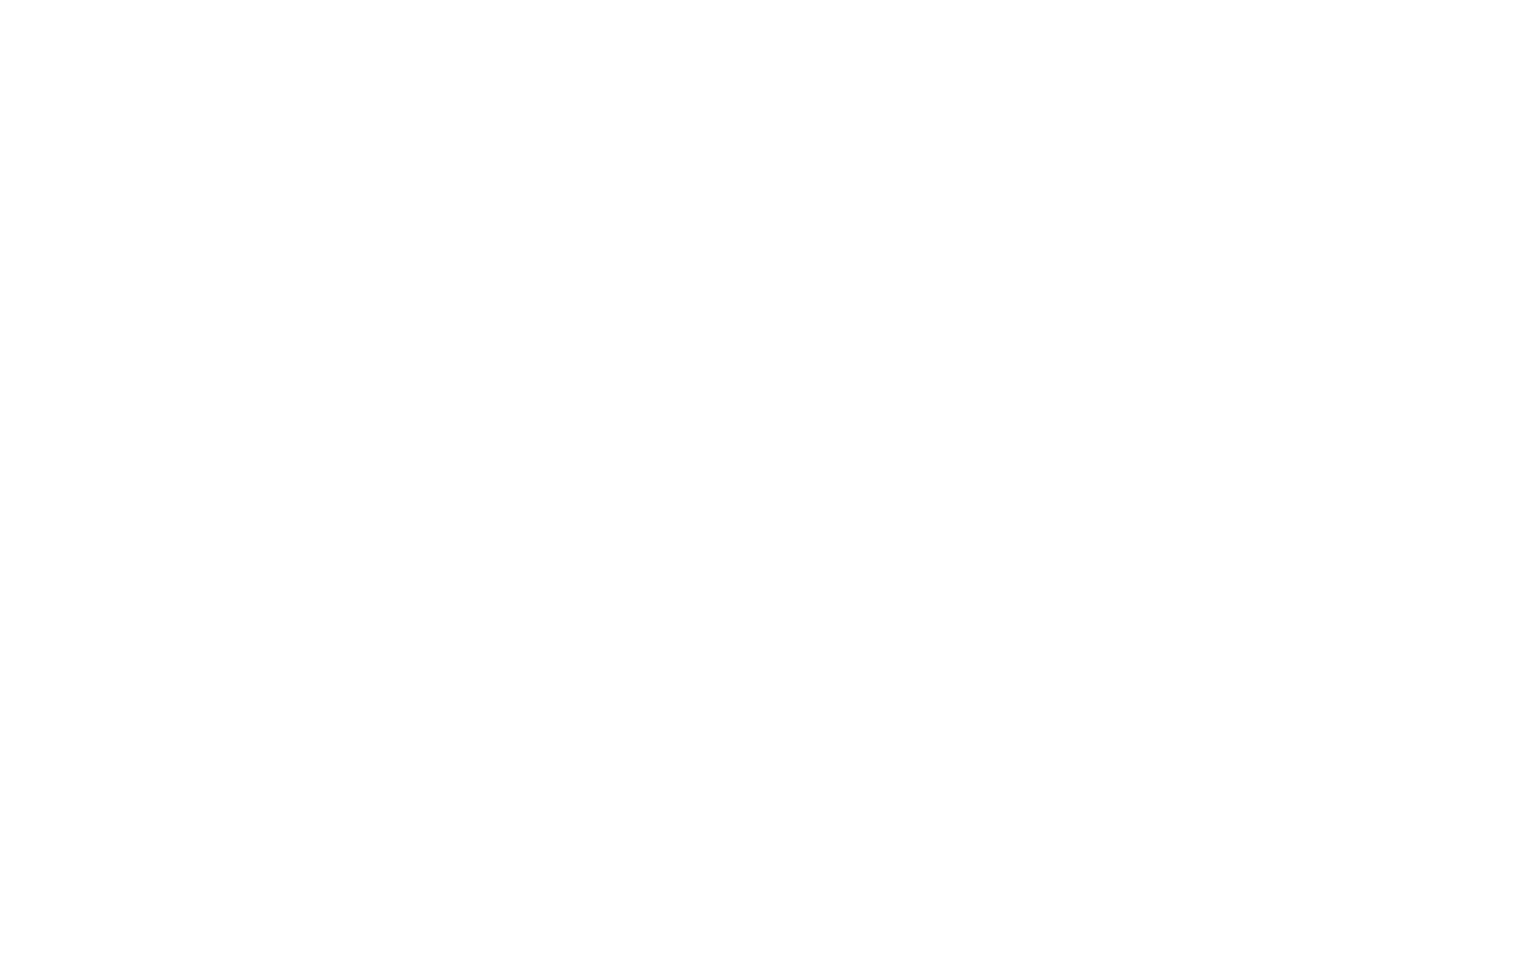 Manning & Napier logo pour fonds sombres (PNG transparent)